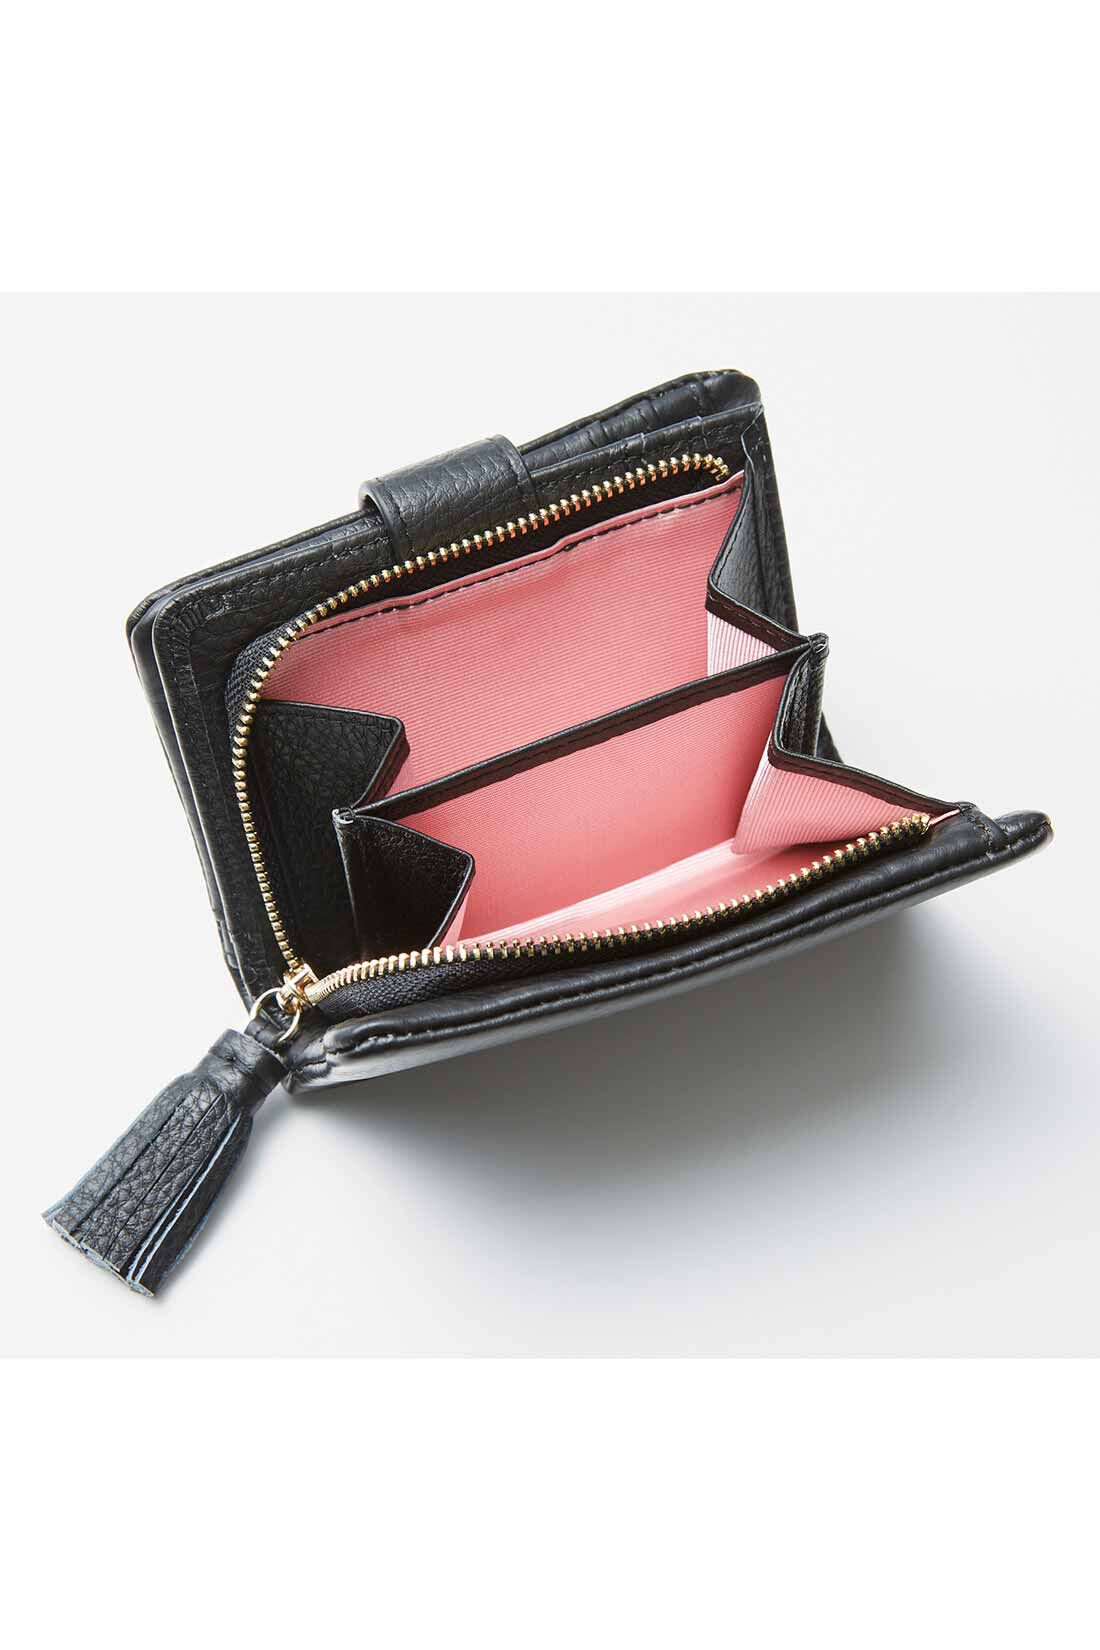 IEDIT|IEDIT[イディット]　くったり本革素材できれいめ二つ折り財布〈オレンジ〉|大きく開くサイドまち付きで、小銭の出し入れもらくらく。内側は気分が上がるカラーに。